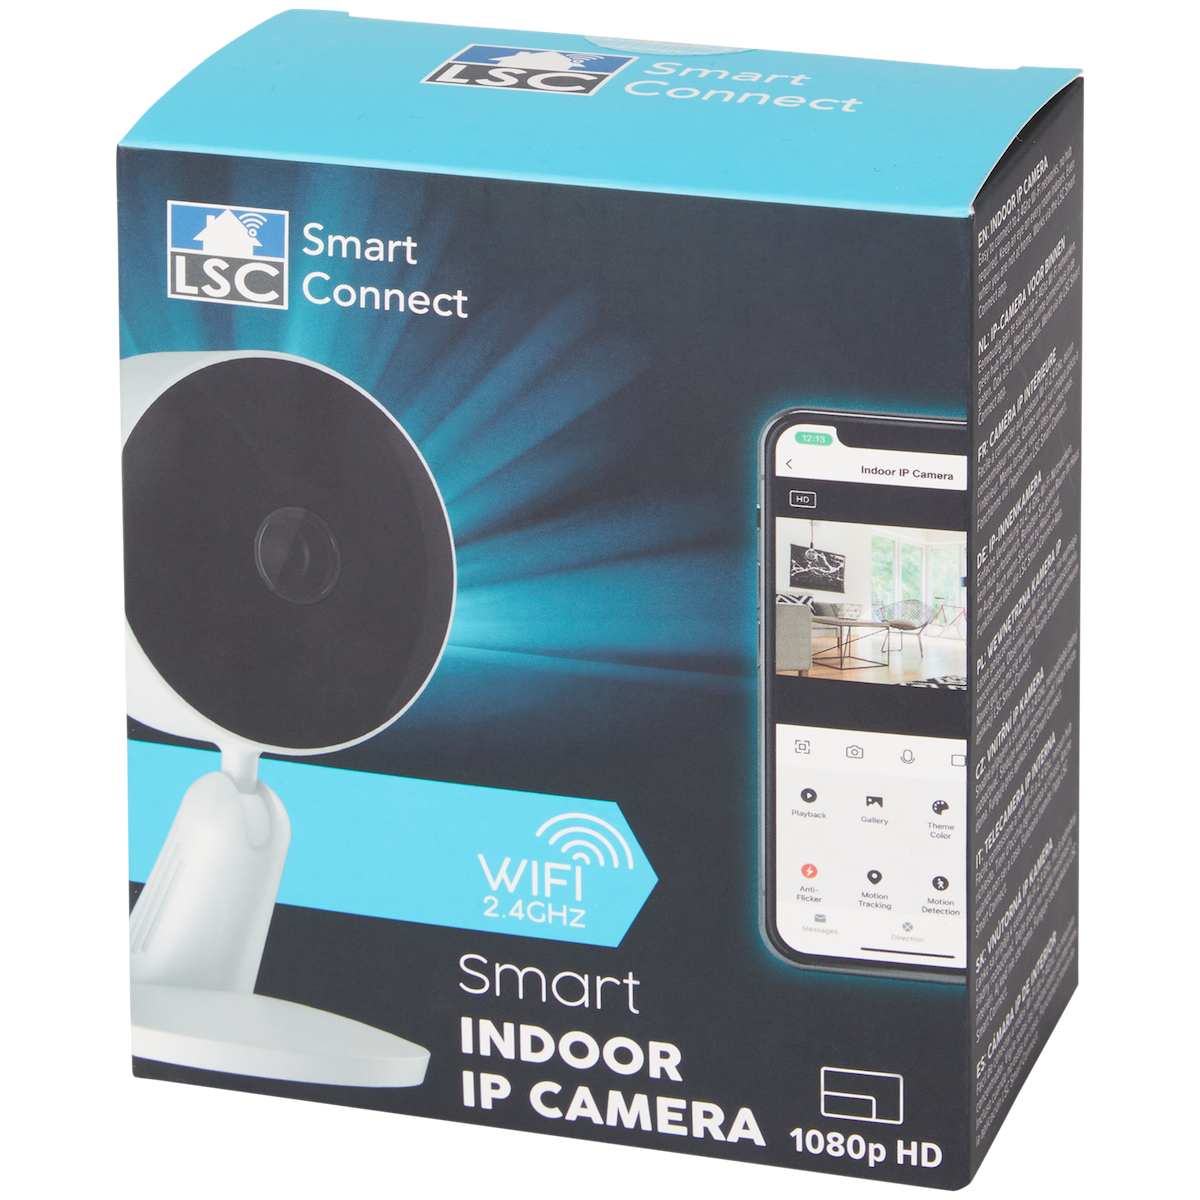 LSC Smart Connect IP-Kamera für Innenbereich

1080p HD - DeinMarkt.at 